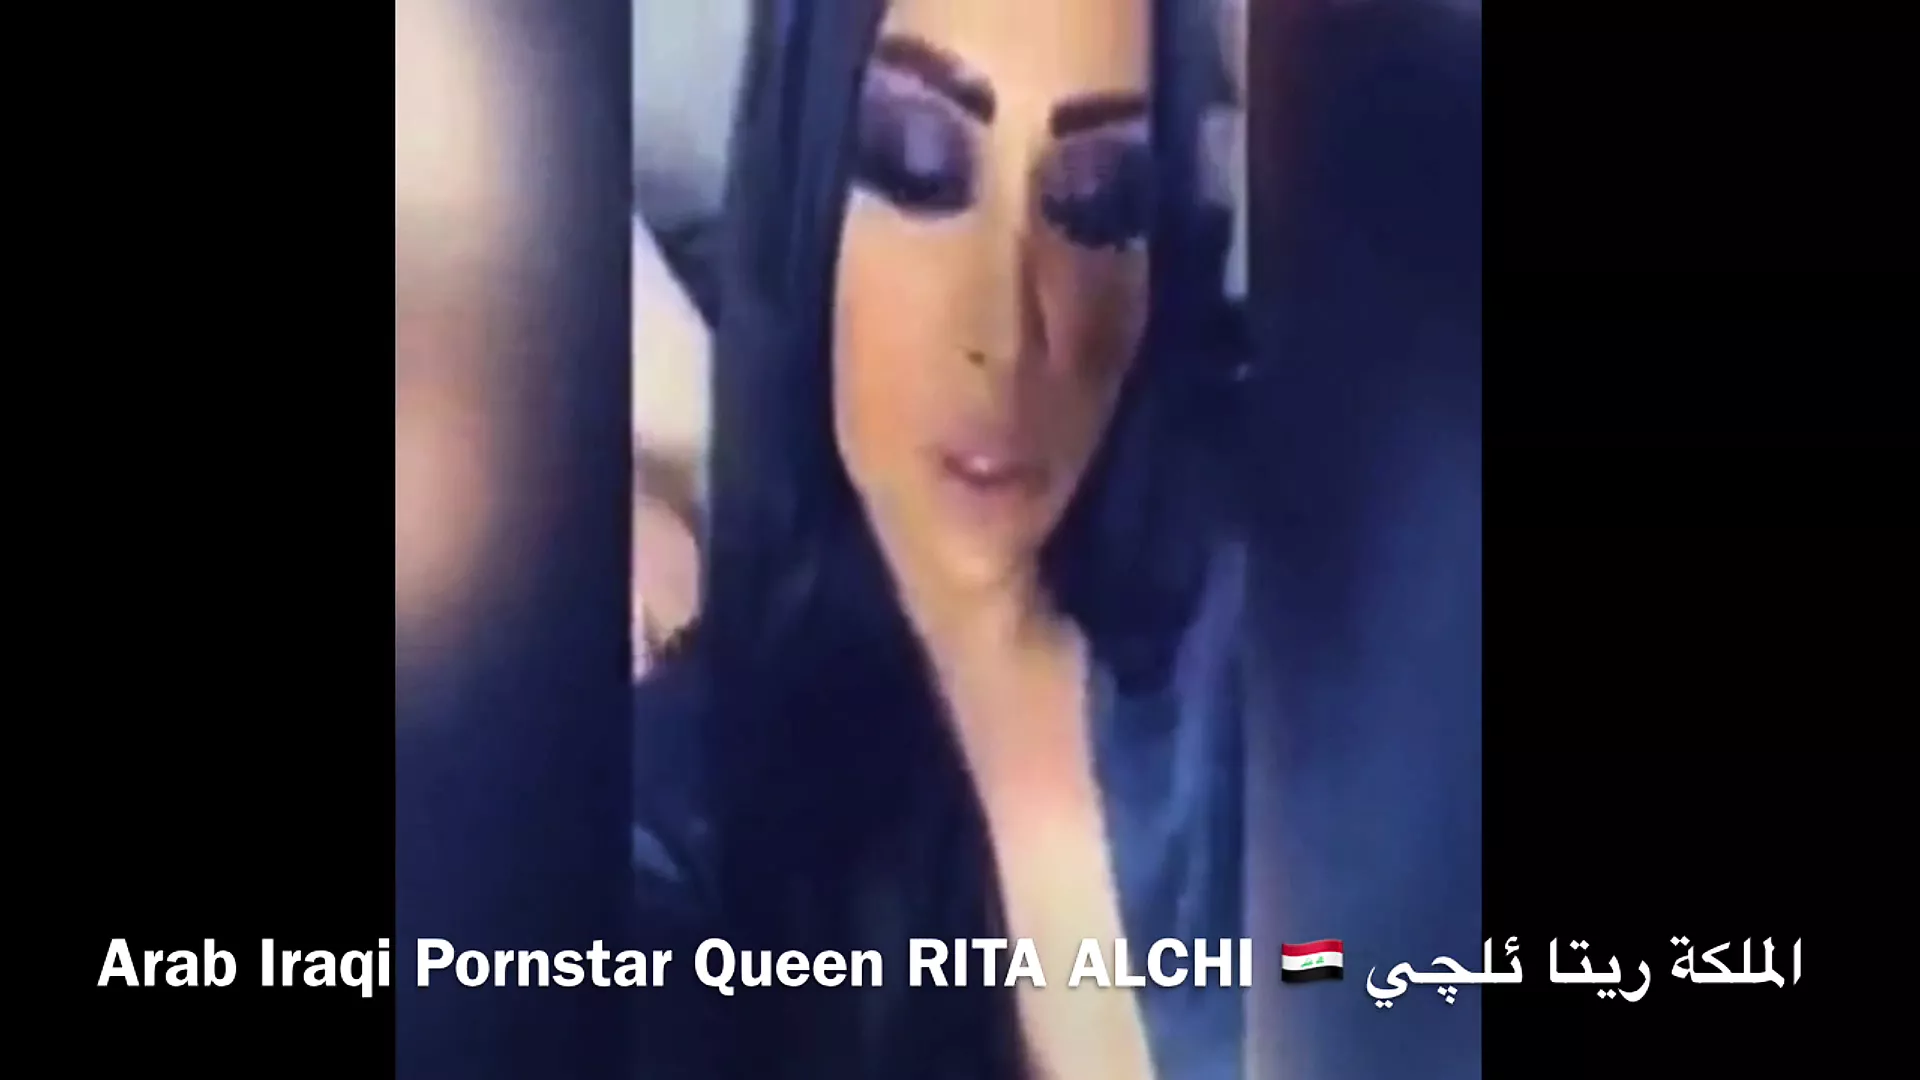 Arab Porn Stars - Arab Iraqi Porn Star Rita Alchi Sex Mission in Hotel | xHamster